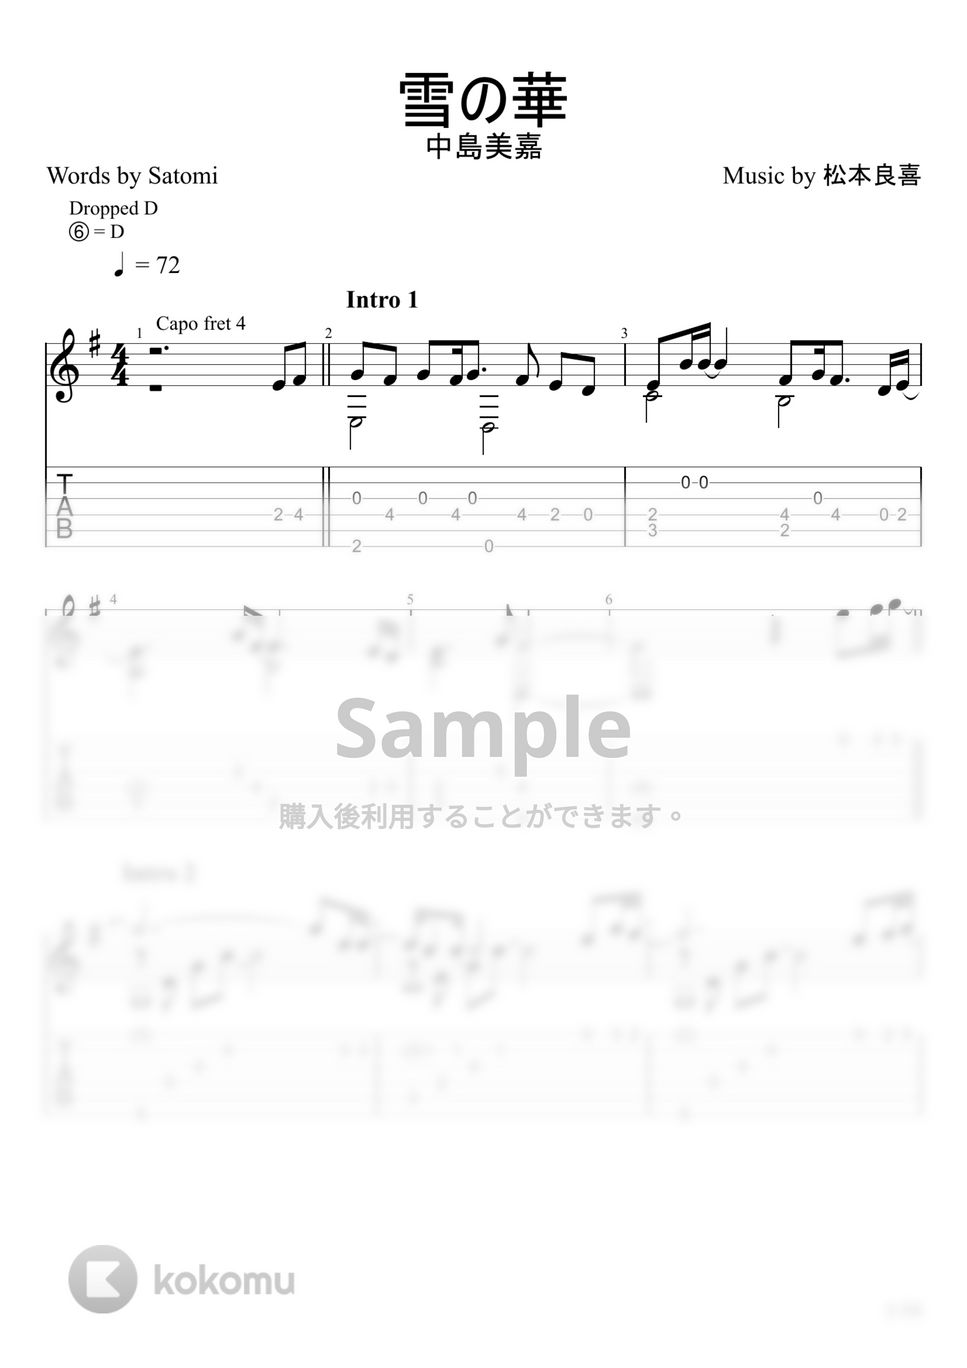 中島美嘉 - 雪の華 (ソロギター) by u3danchou